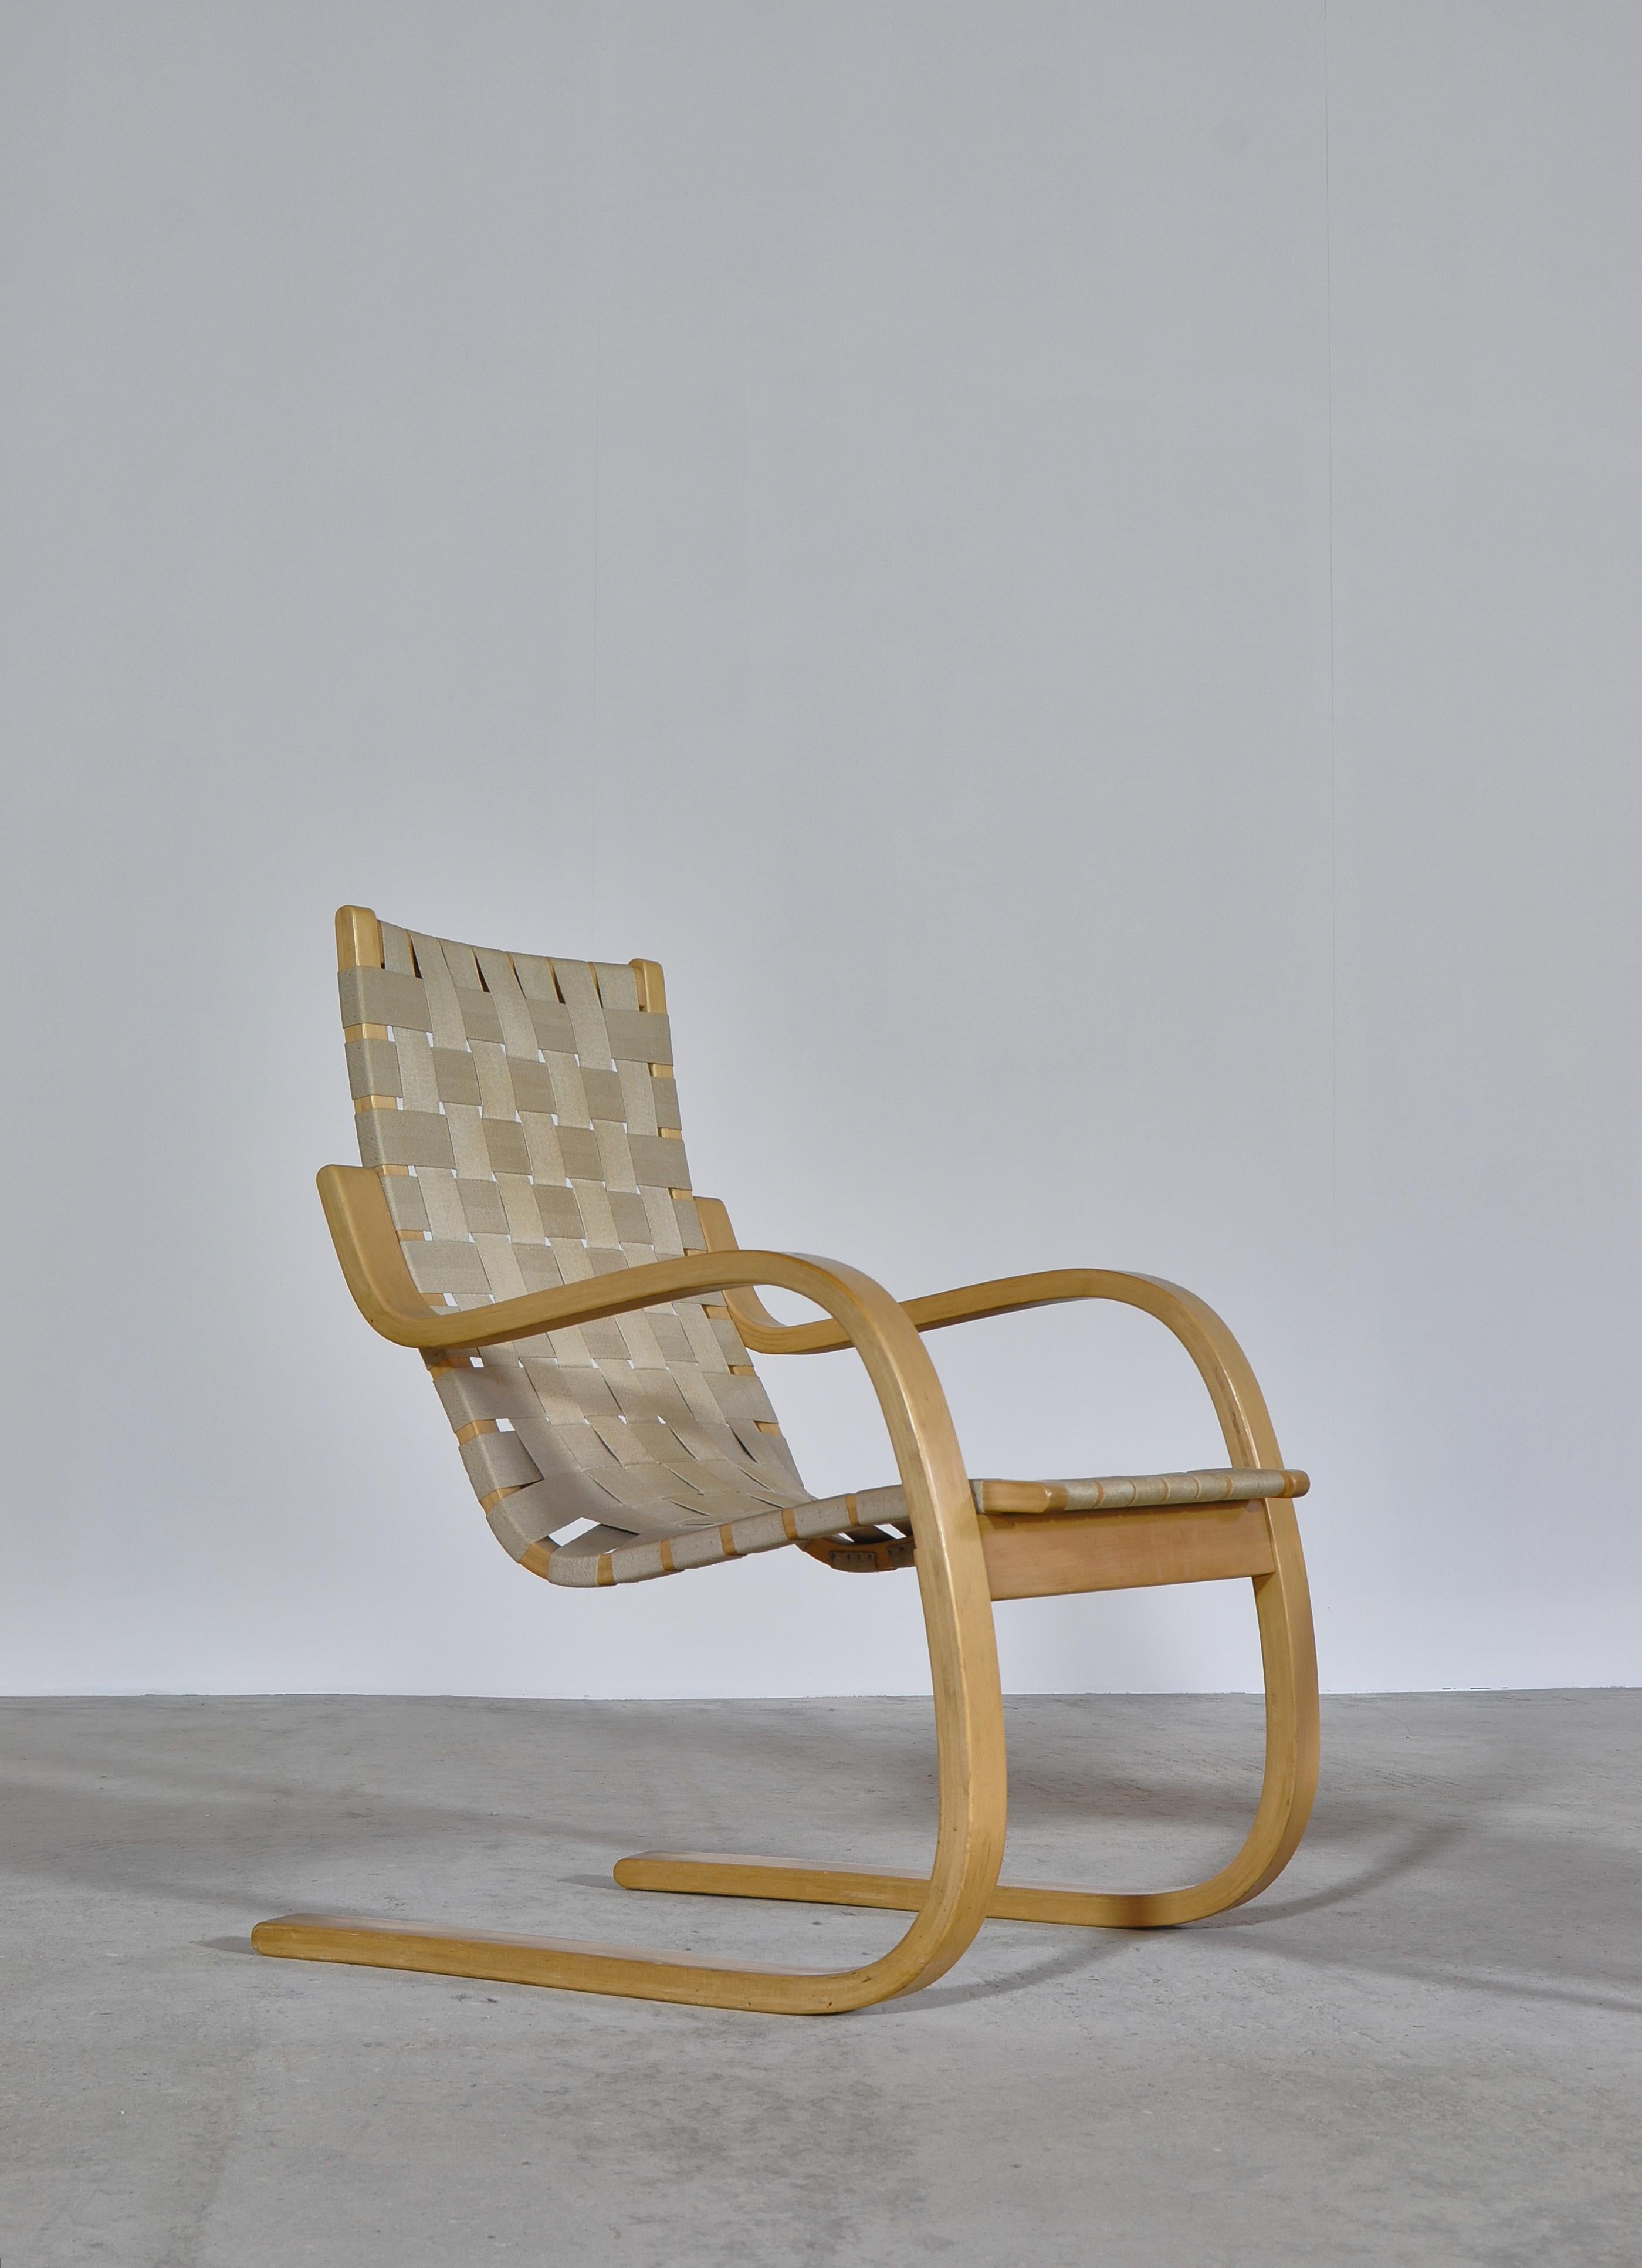 Finnish Alvar Aalto Scandinavian Modern Lounge Chairs Model 406 in Birch by Artek, 1960s